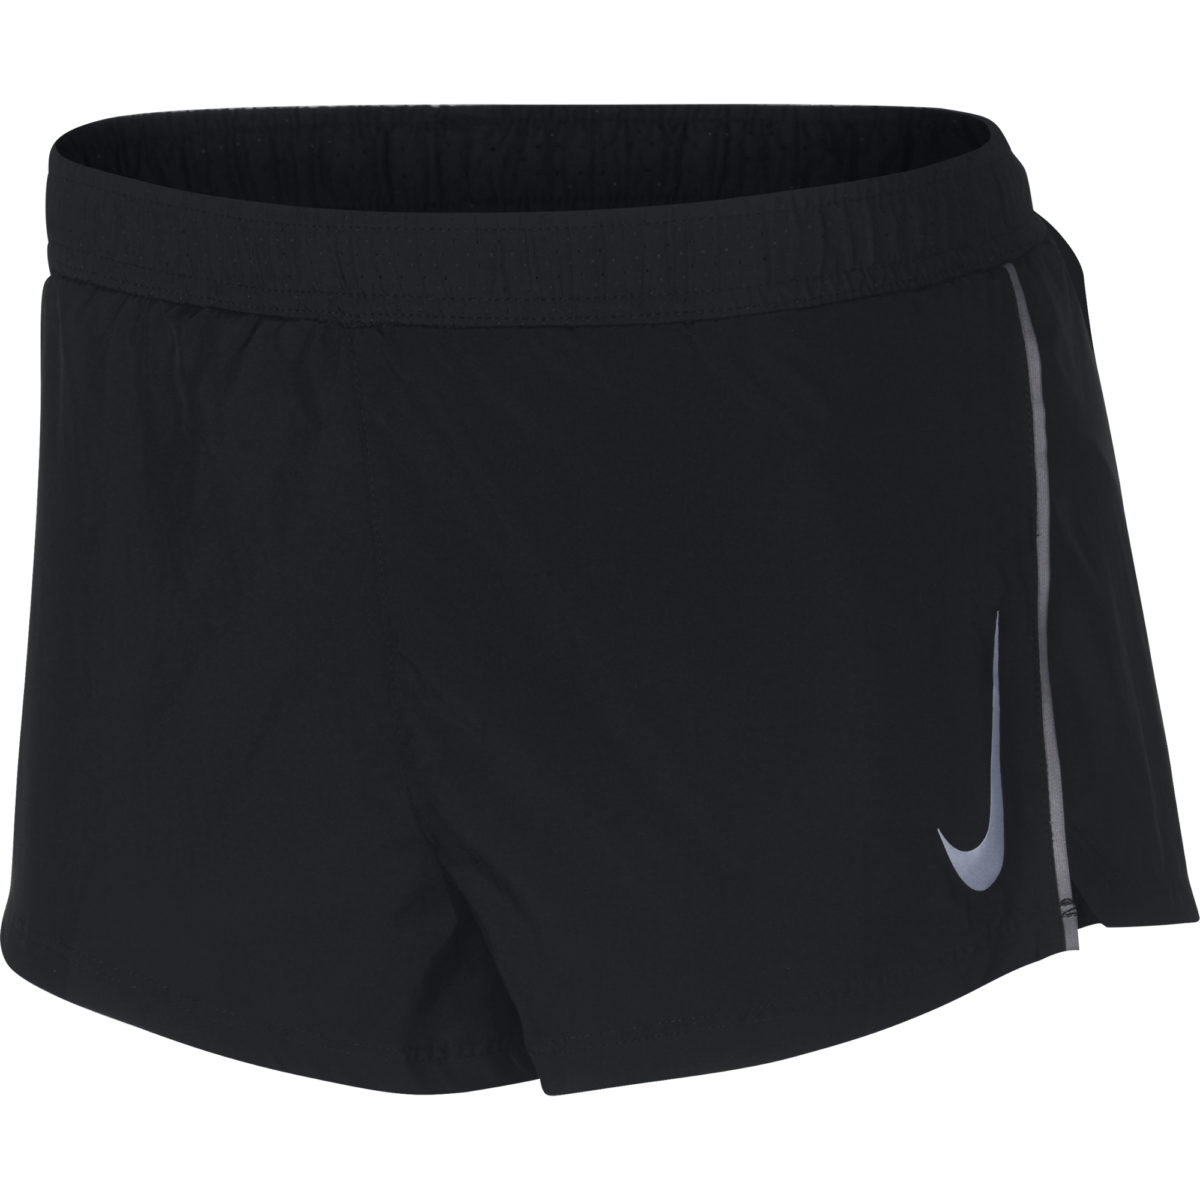 Men's Nike 2" Split Short 893039-010